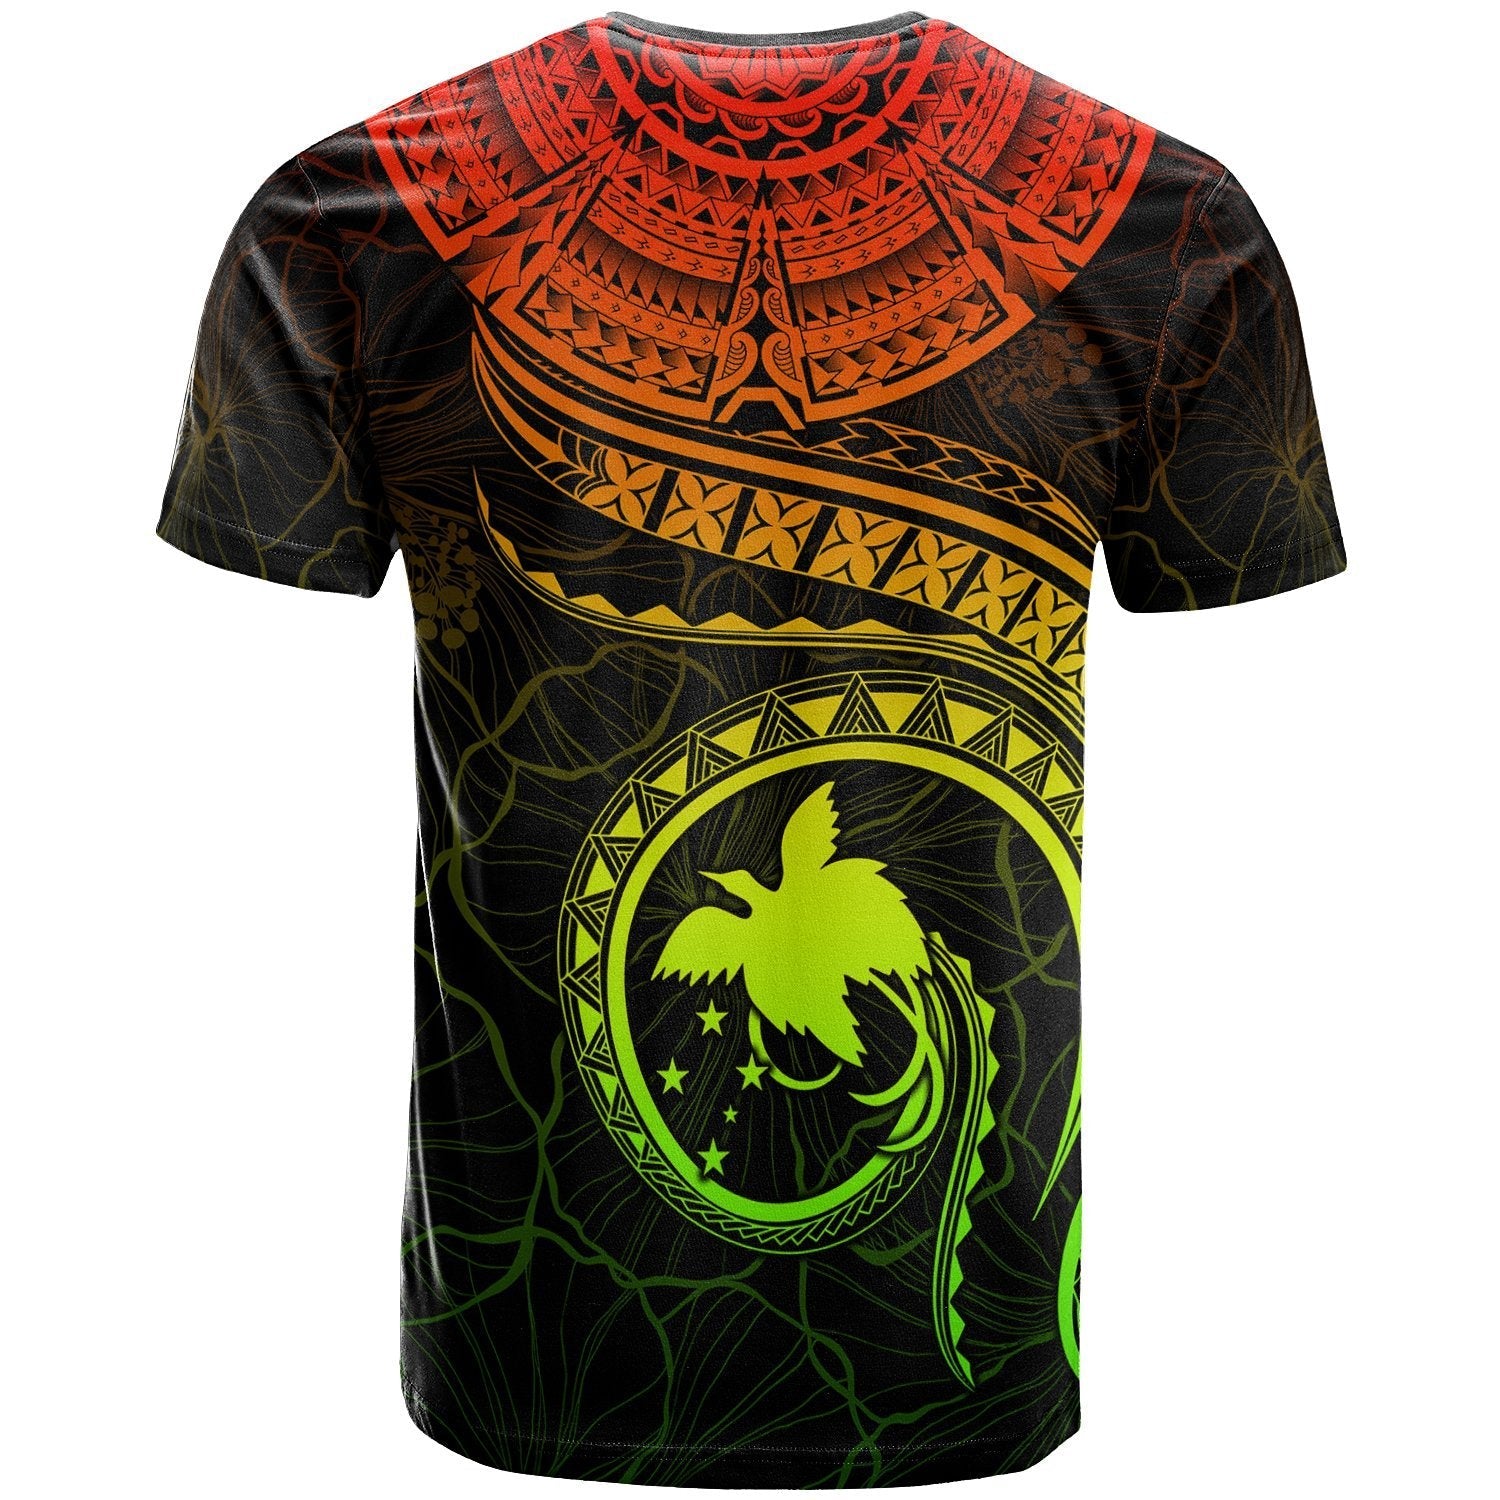 papua-new-guinea-polynesian-t-shirt-papua-new-guinea-waves-reggae